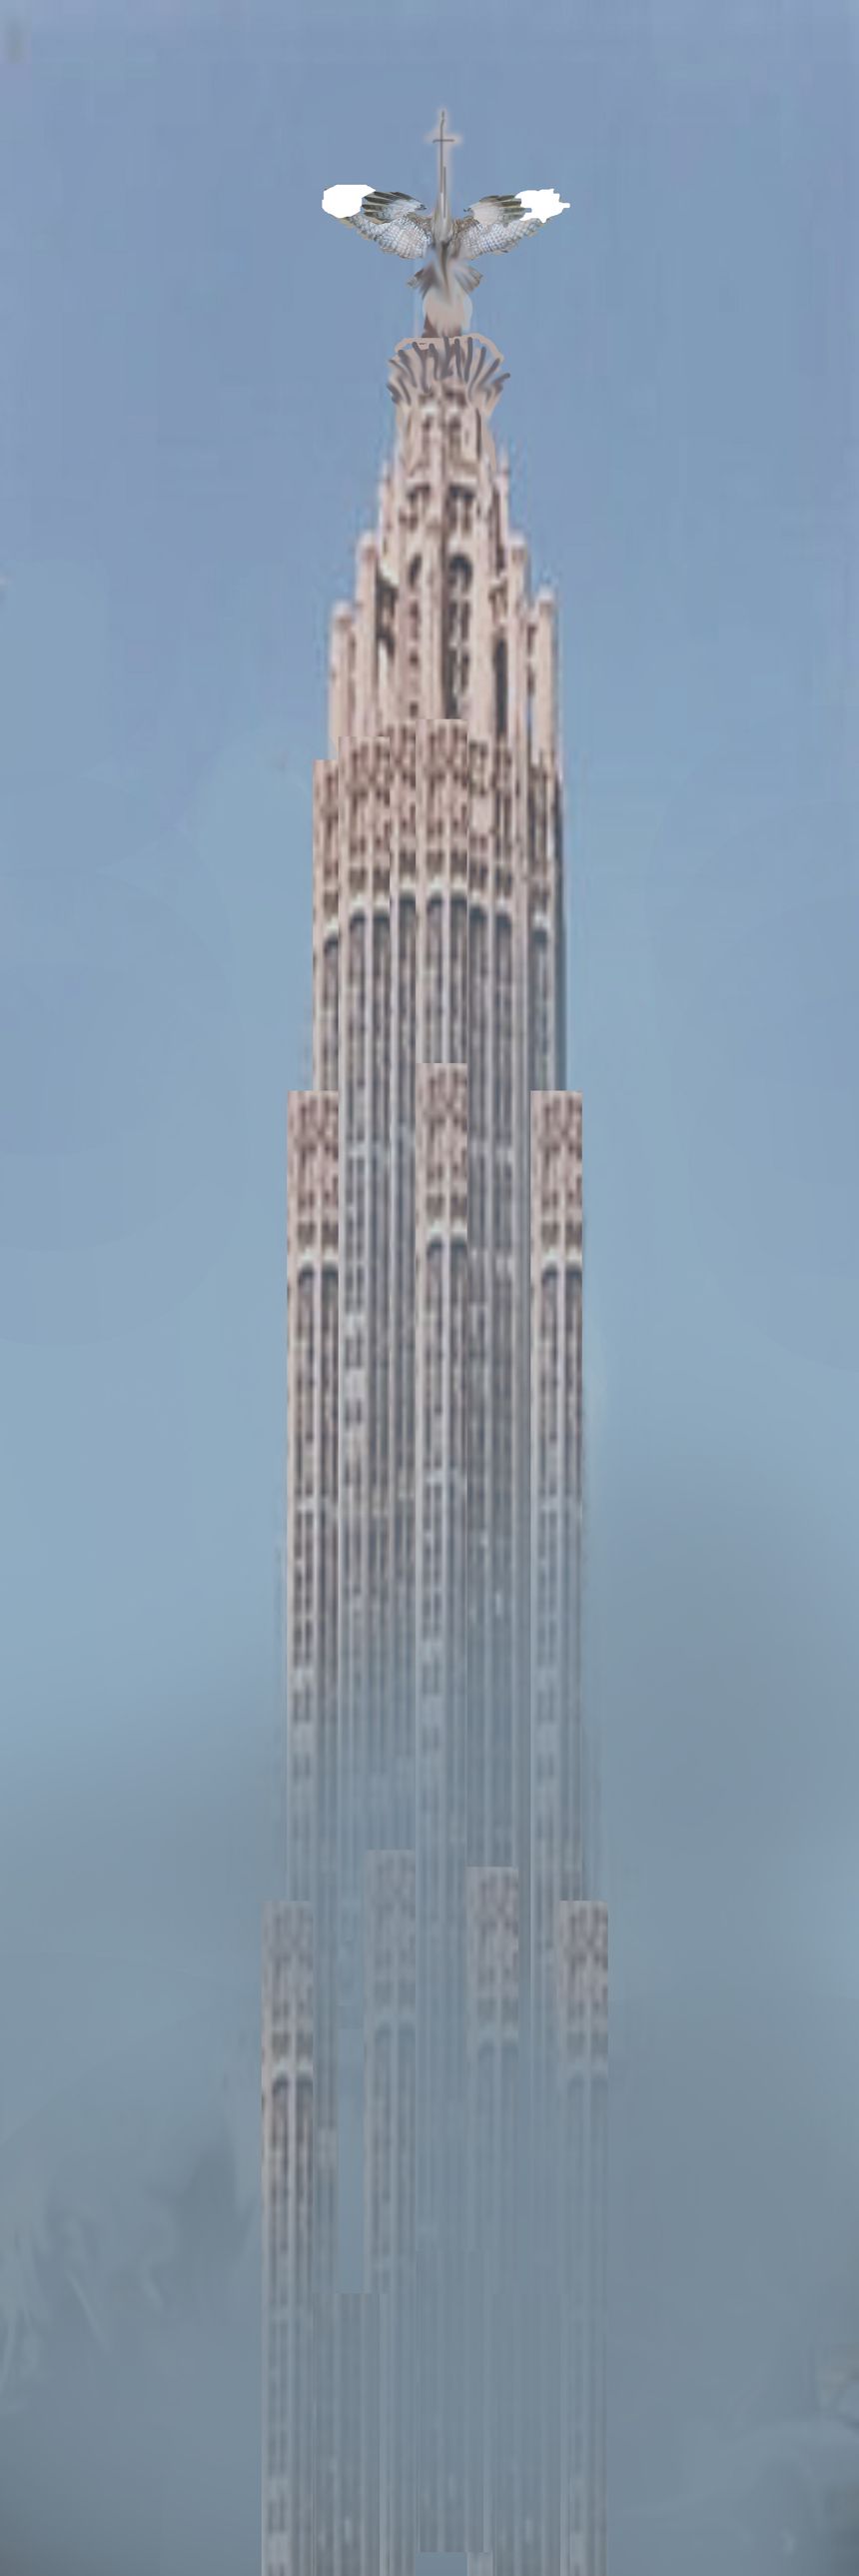 Wieża ORŁA 4